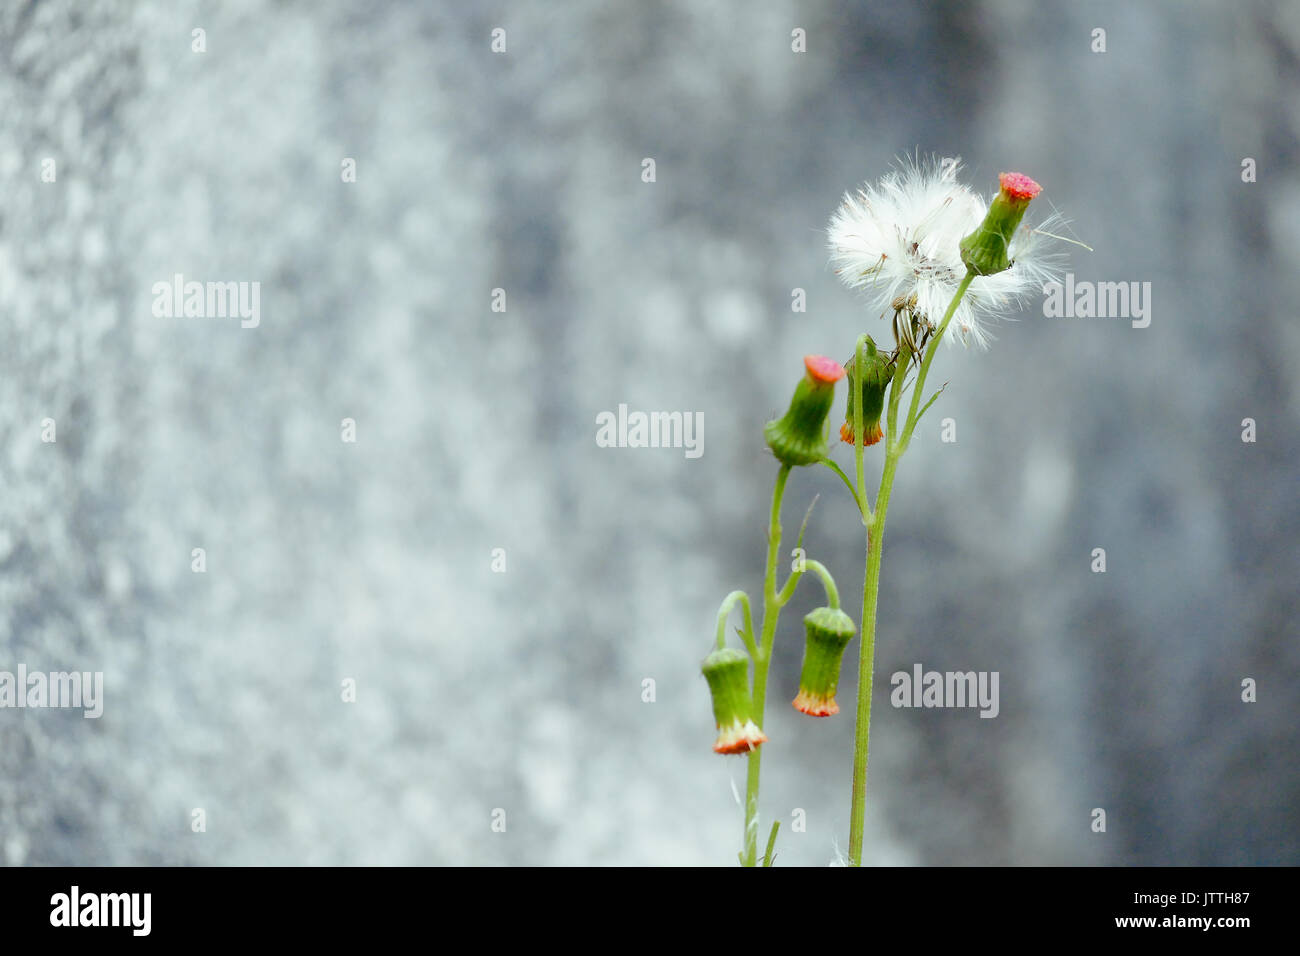 Un fiore bianco, rosso gemme e pianta piccola contro una trama parete sfocata Foto Stock